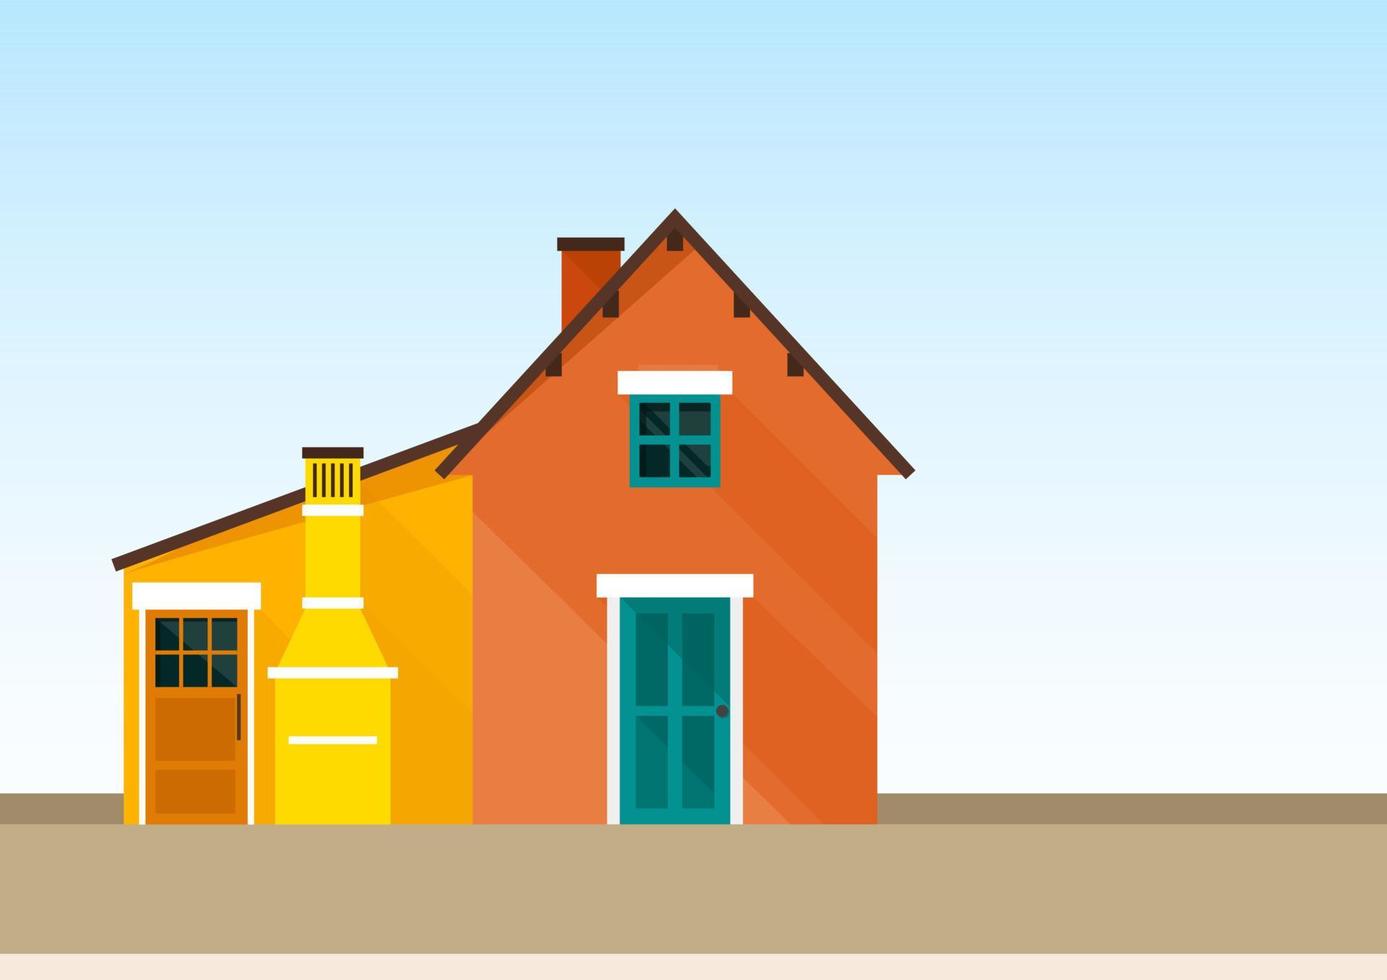 zwei häuser gelb und orange im skandinavischen stil vektor